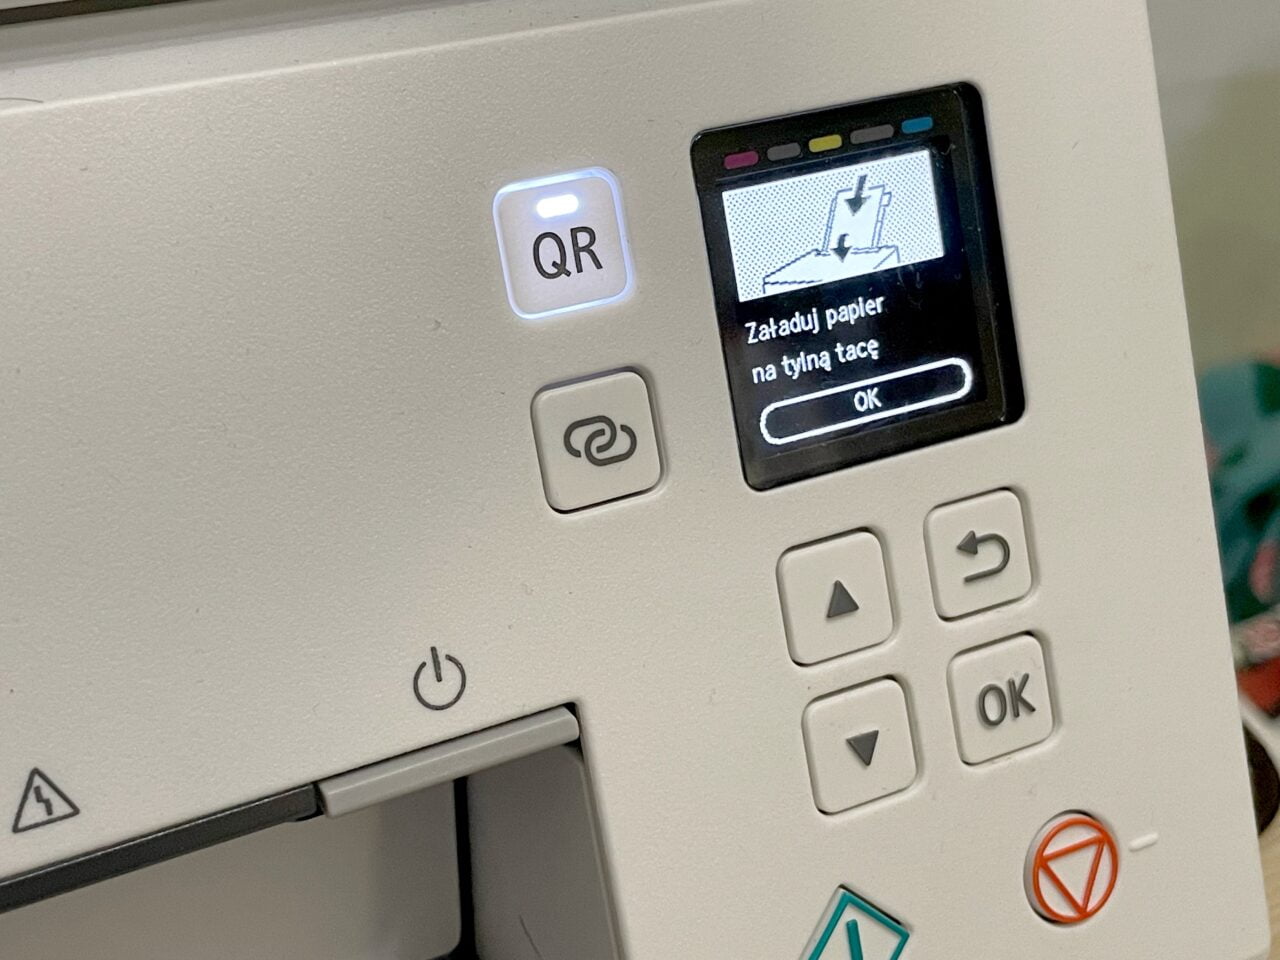 Panel kontrolny urządzenia z ekranem wyświetlającym monochromatyczny obrazek i napis "Załaduj papier na tylną tacę" z przyciskiem "OK" oraz innymi przyciskami sterującymi i symbolem QR.